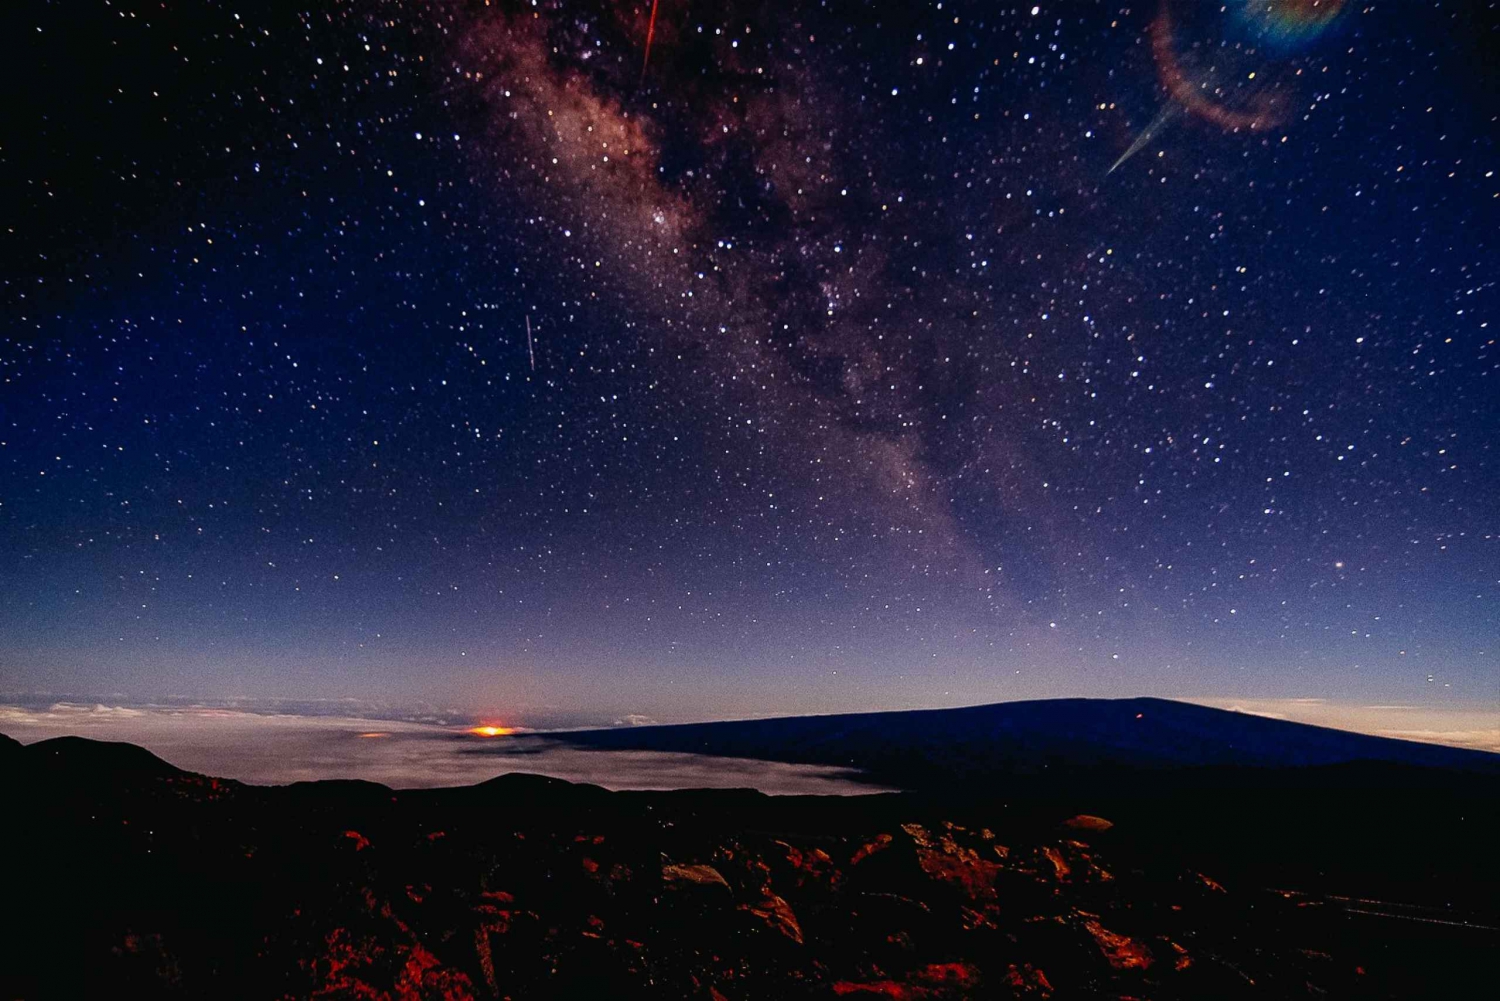 Fra Hilo: Guidet stjernekiggertur til Mauna Kea